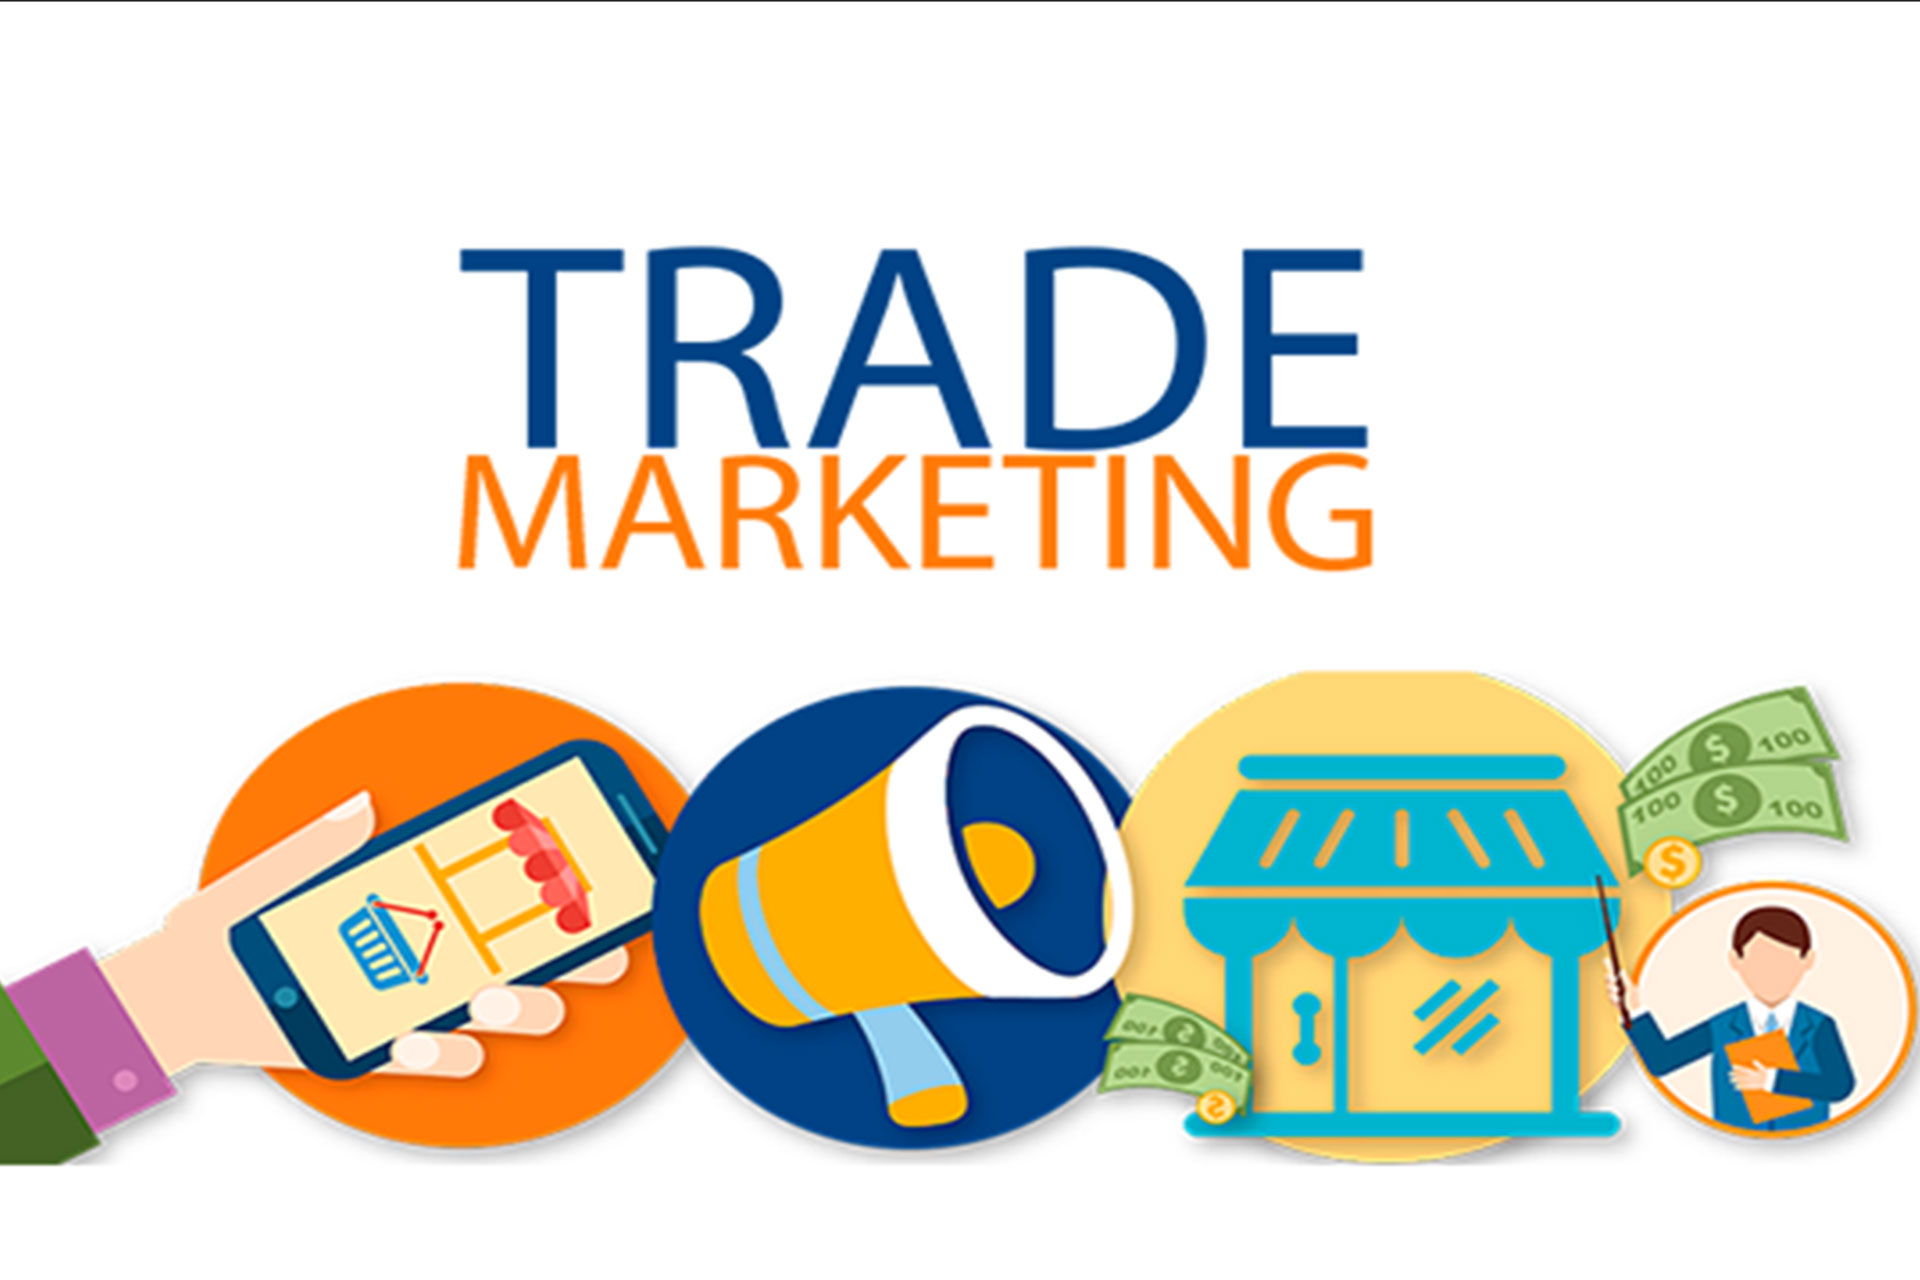 Phân biệt Trade Marketing và Brand Marketing bạn nên biết càng sớm càng tốt